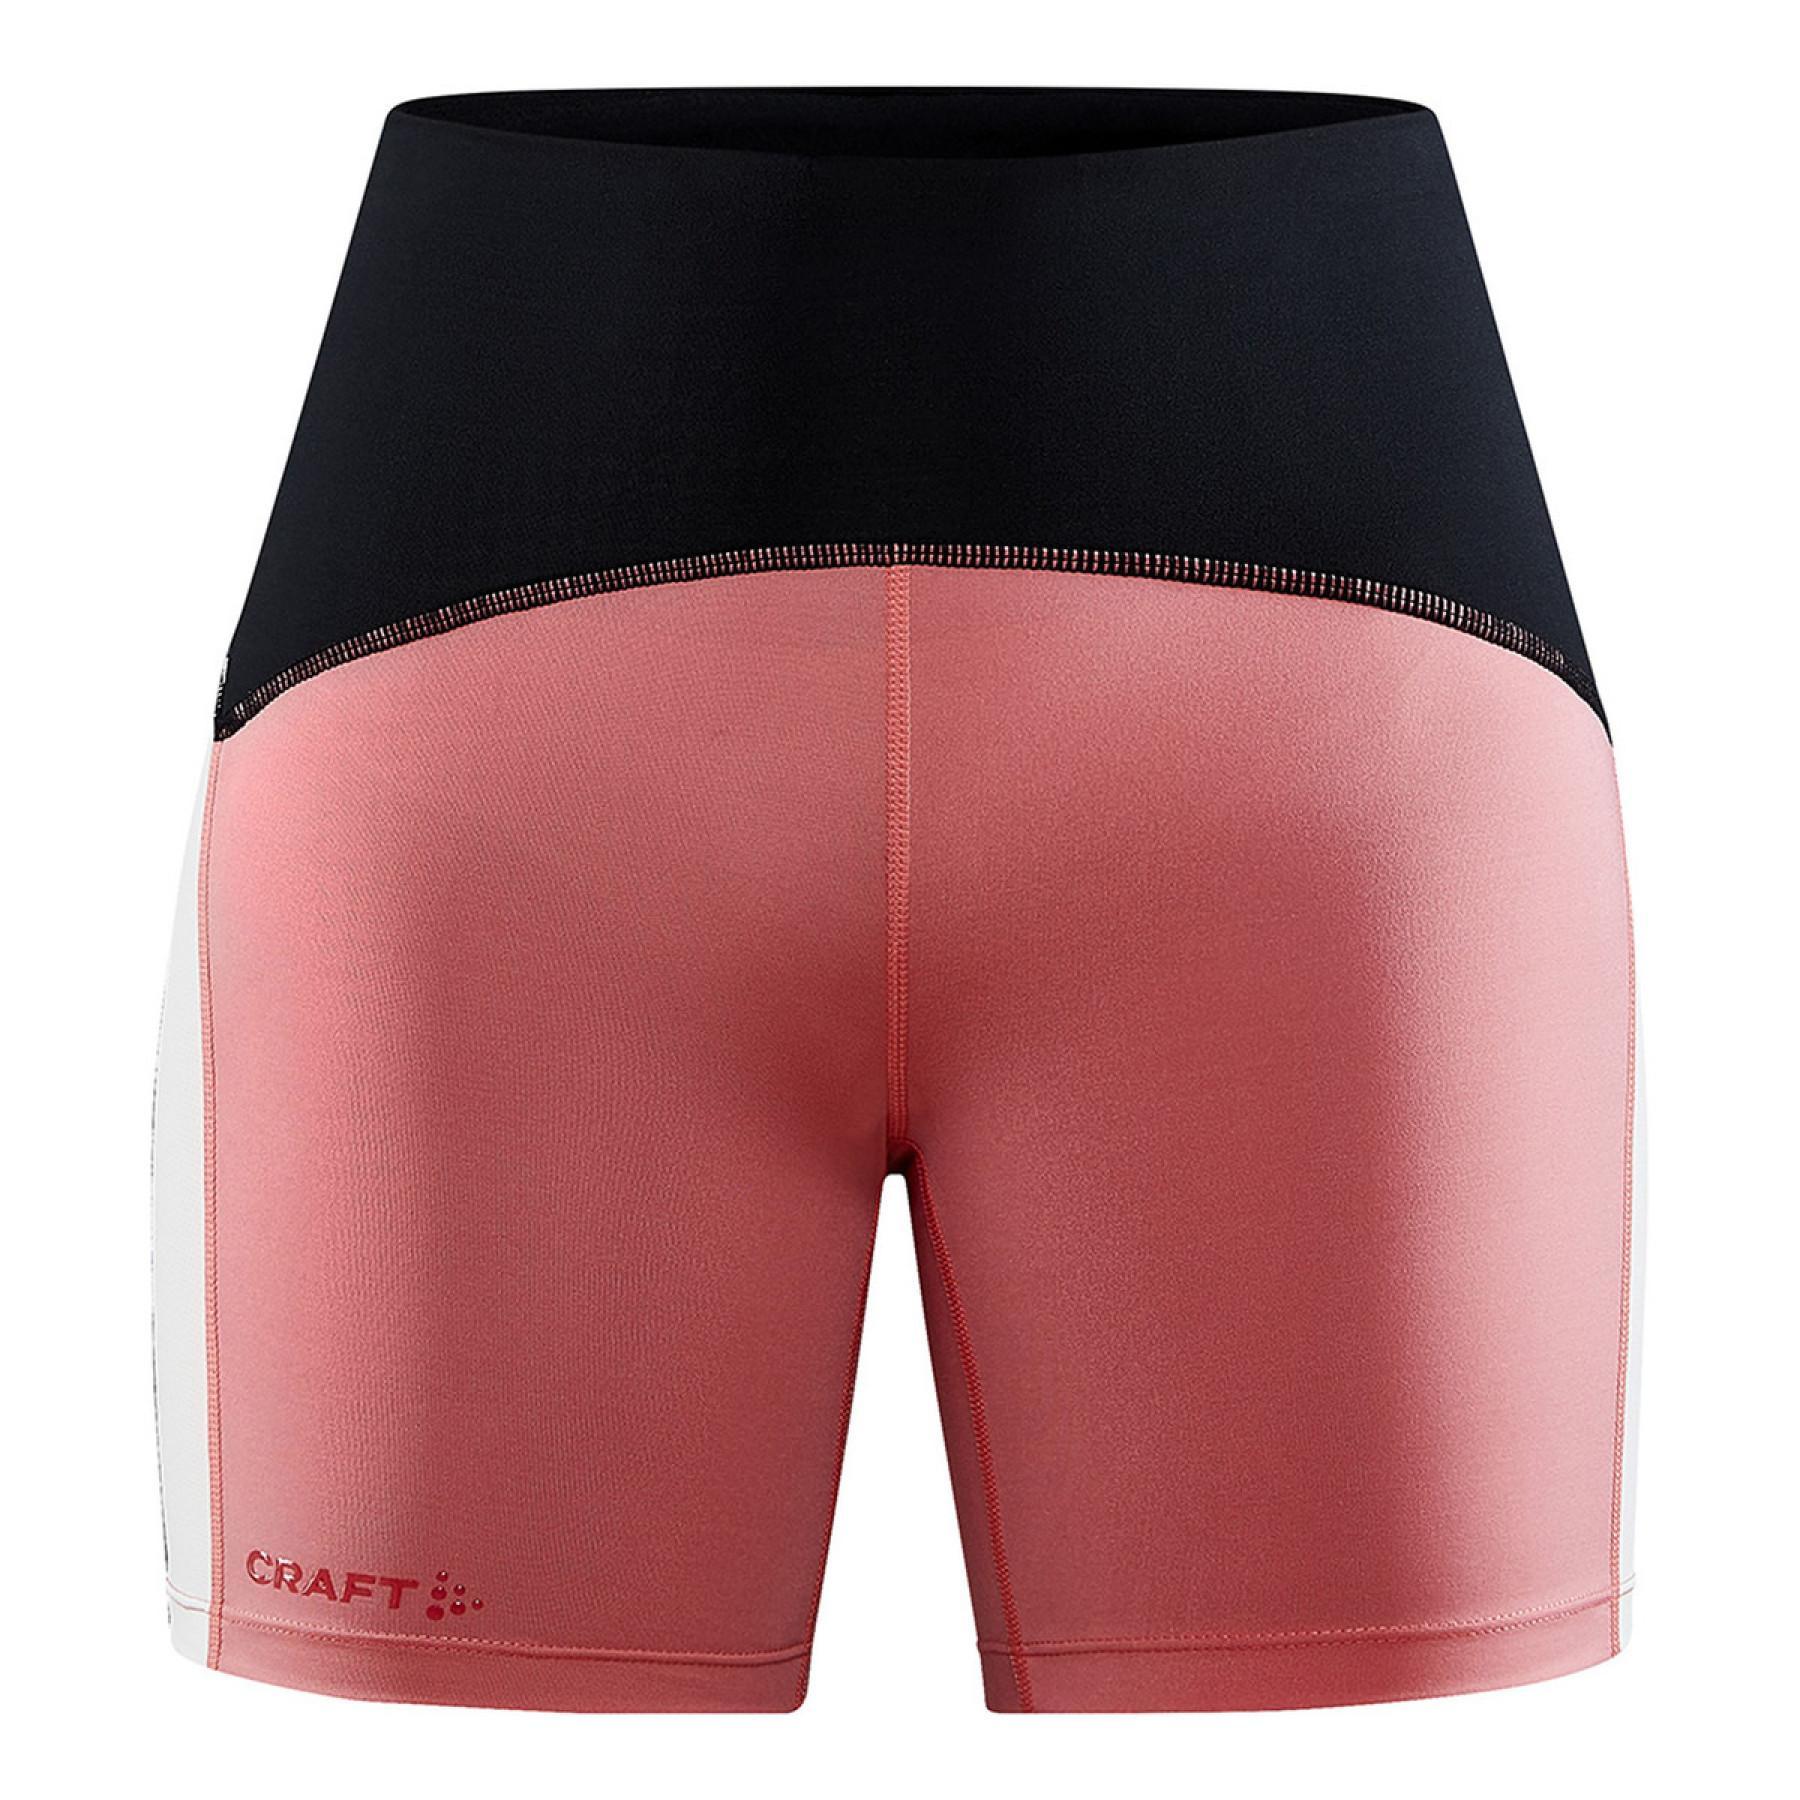 Pantalón corto de compresión para mujer Craft pro hypervent